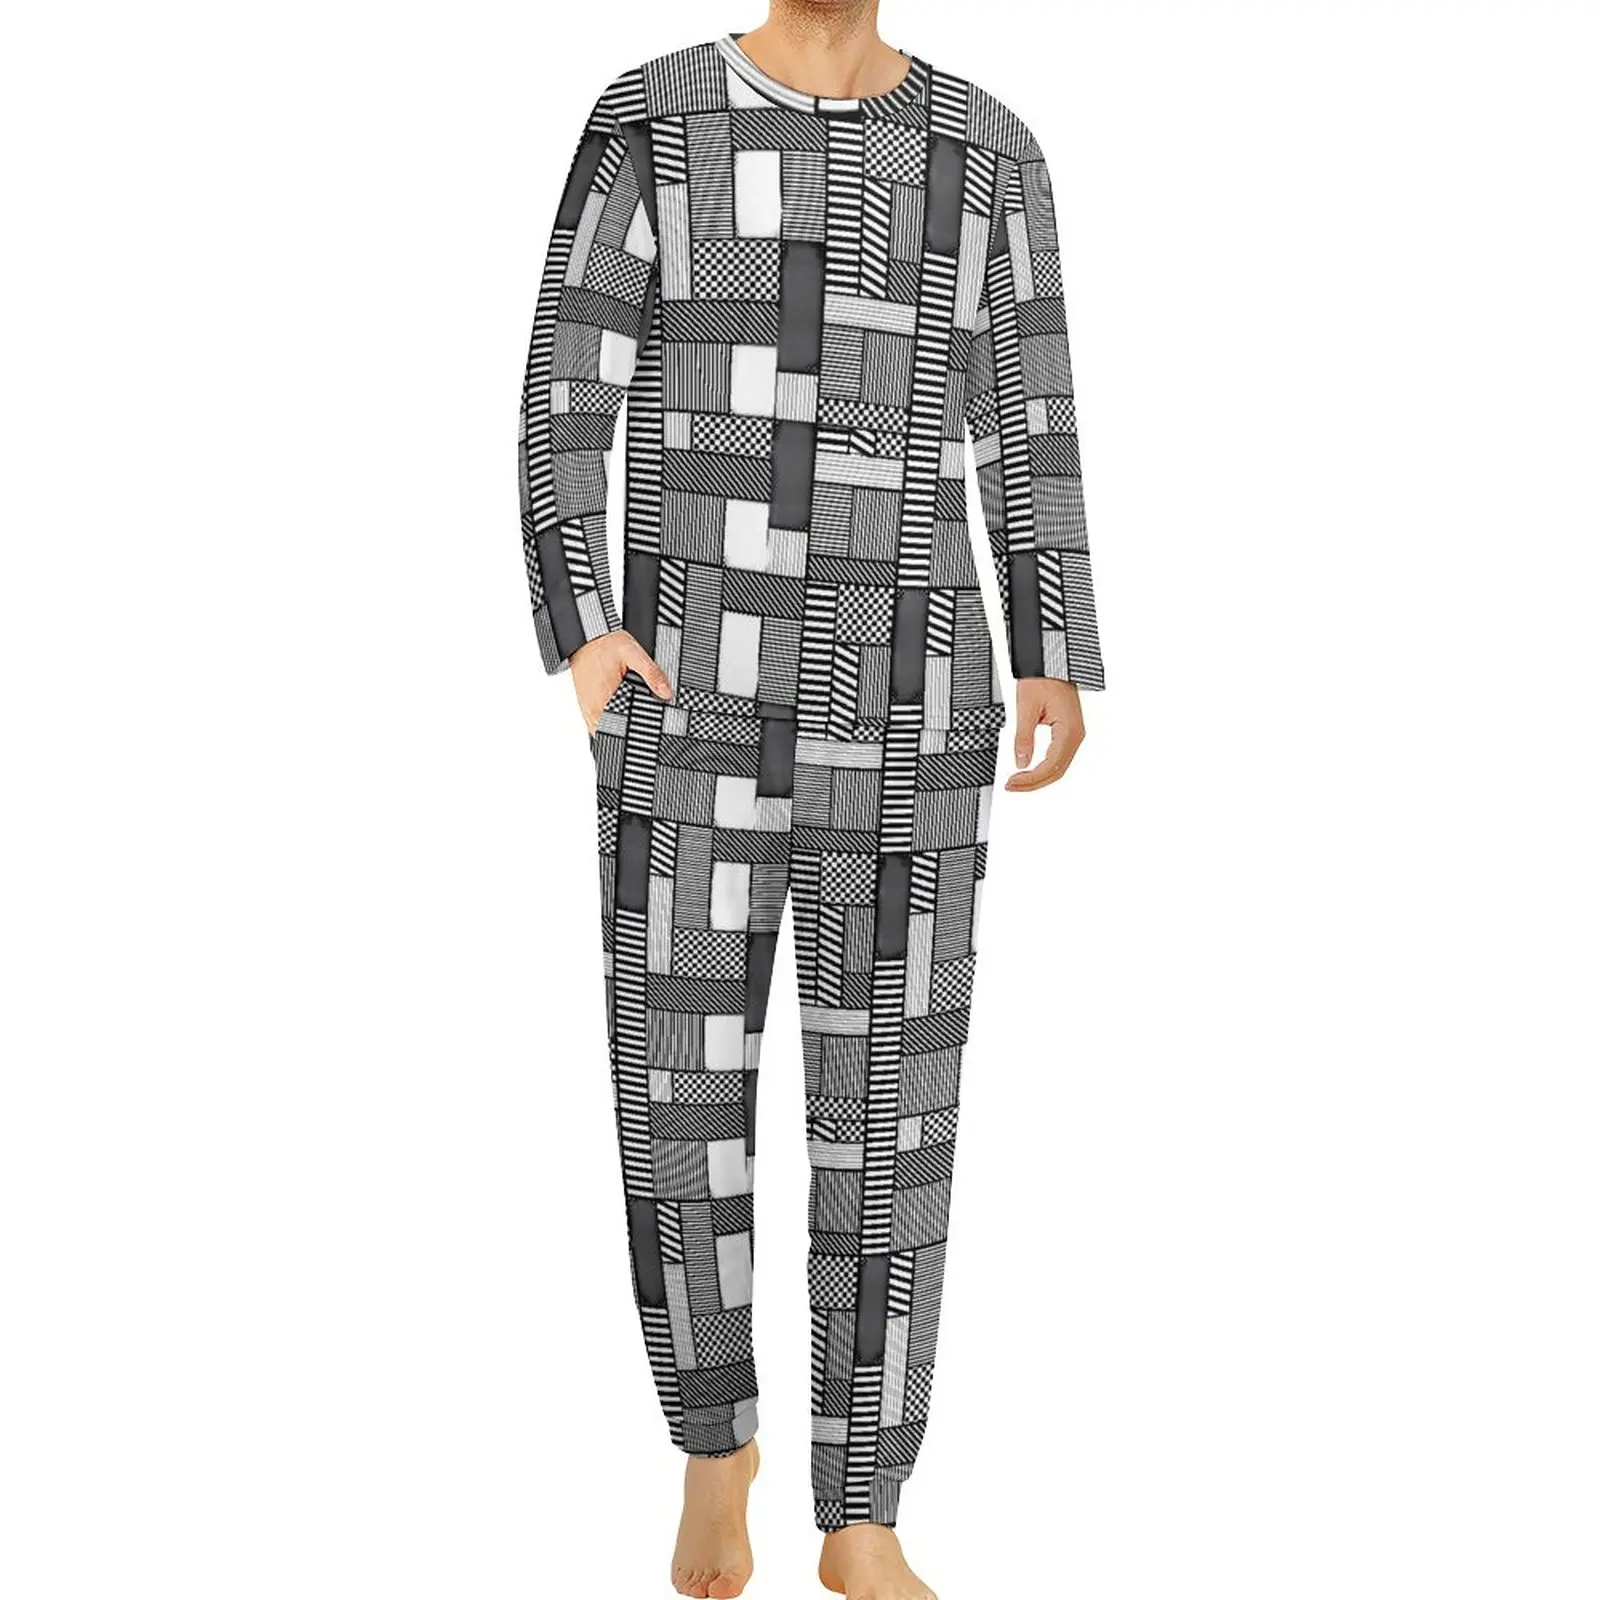 

Черно-белая Пижама с геометрическим принтом, Осенние романтические пижамные комплекты из 2 предметов в стиле пэчворк с геометрическим рисунком, мужской домашний костюм для отдыха с длинным рукавом на заказ